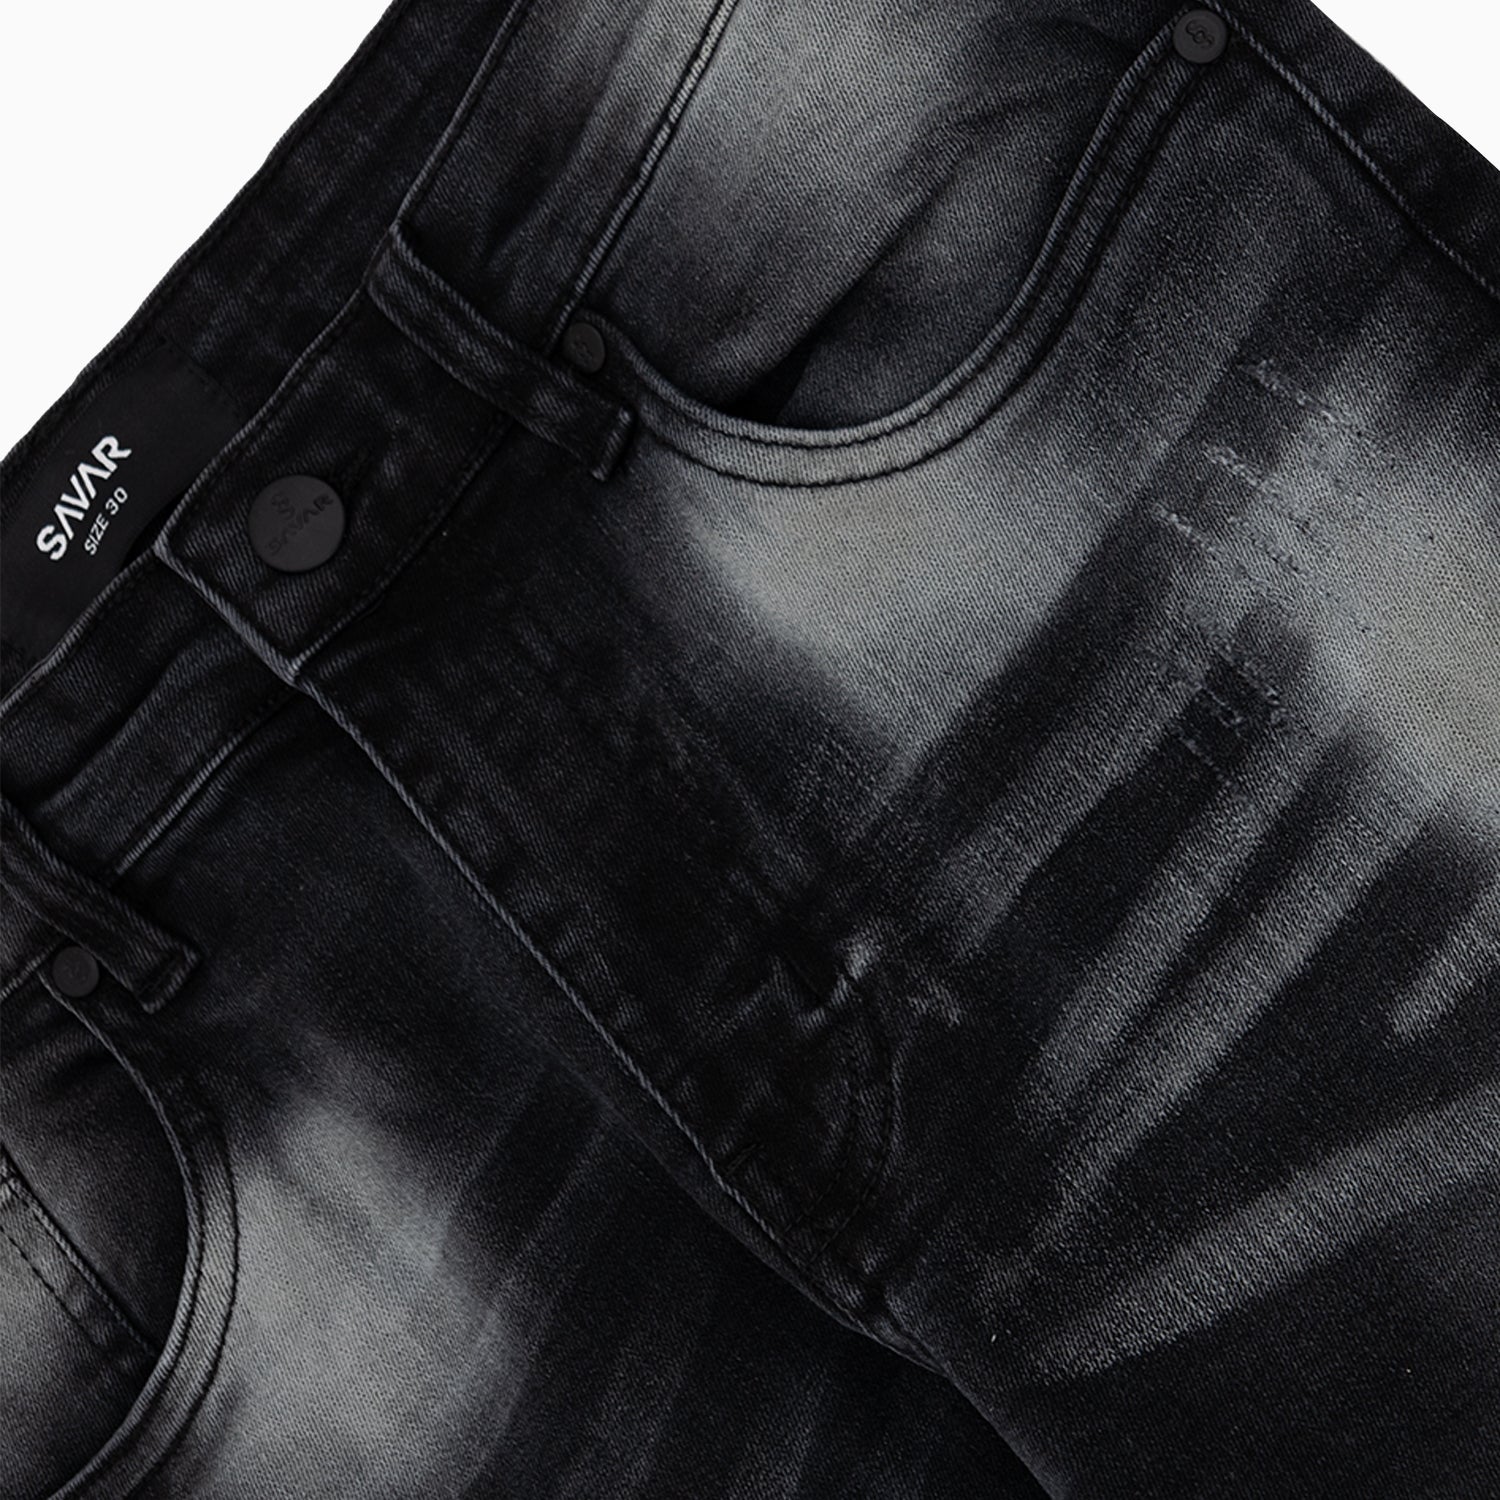 Men's Savar Black Wash Slim Denim Jeans Pant